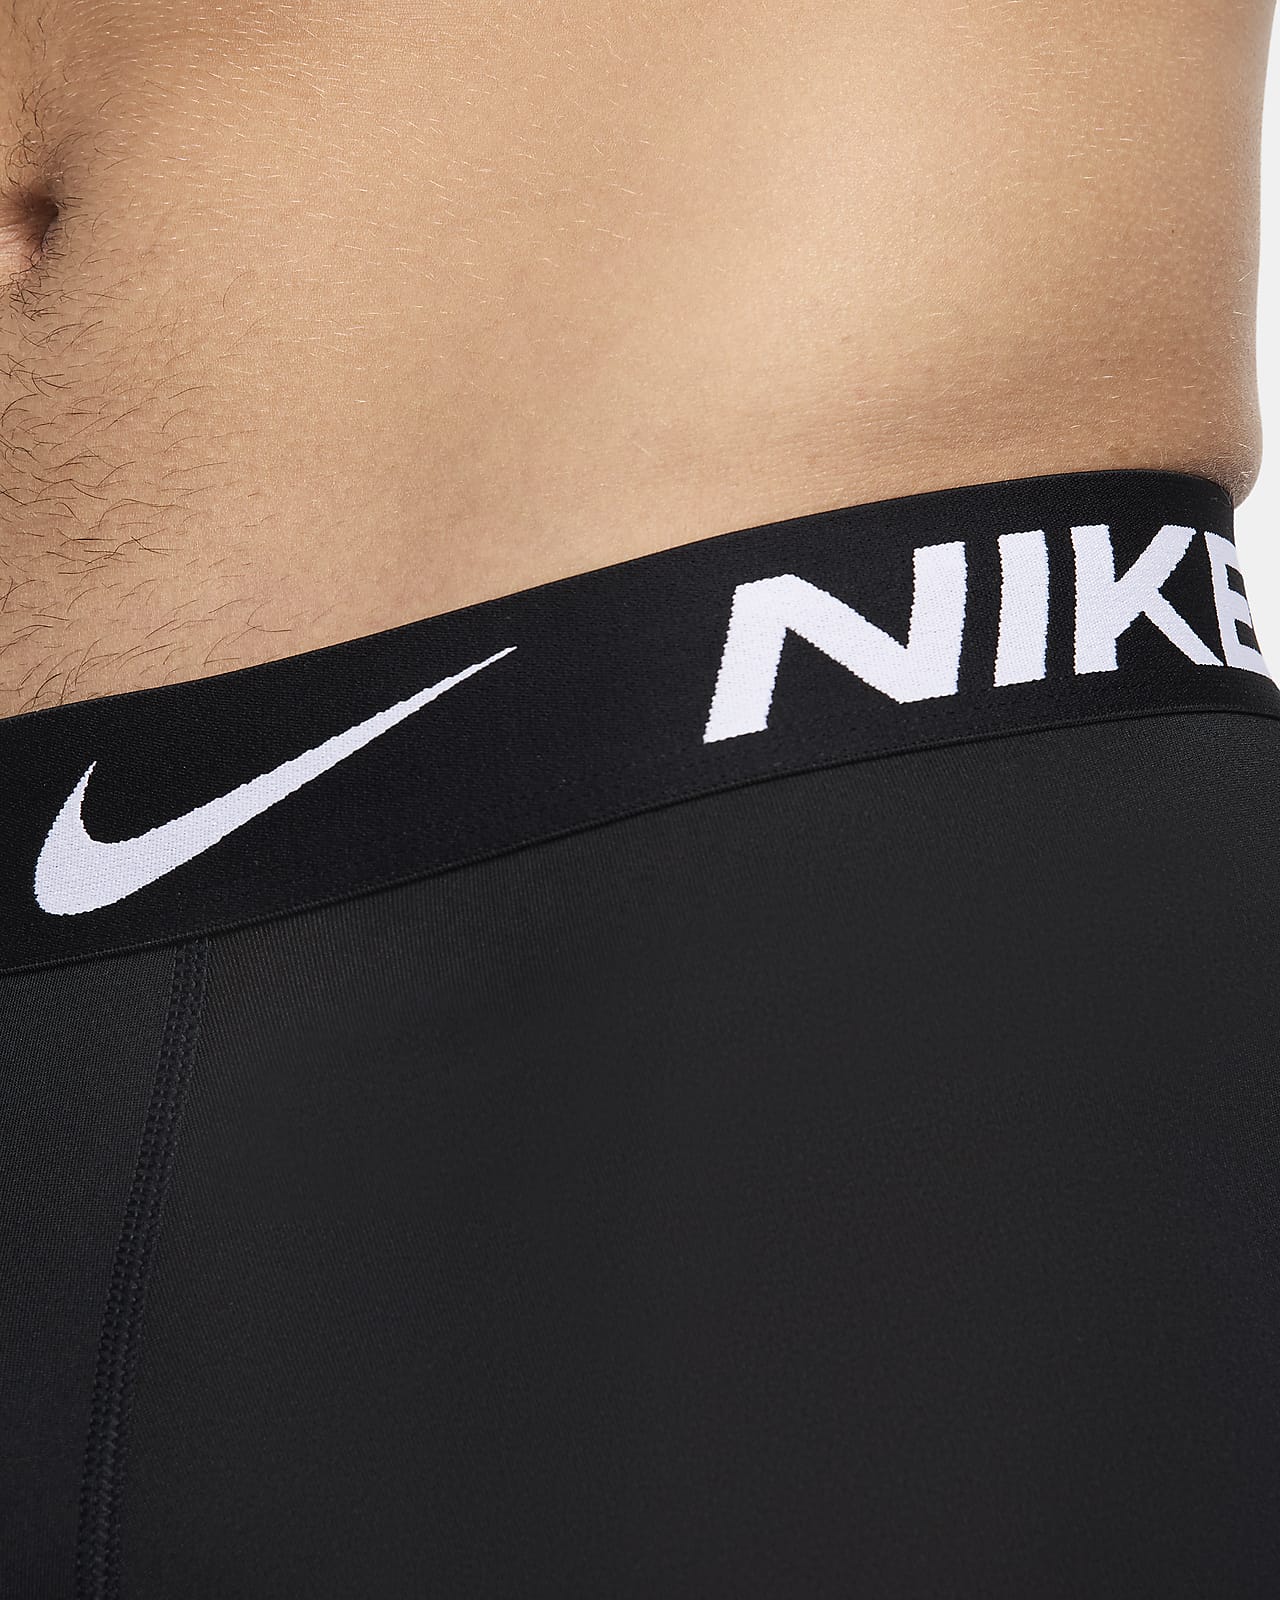 Nike Dri-Fit Move to Zero Boxer Brief Men's XL NEW Gray - Single Pair